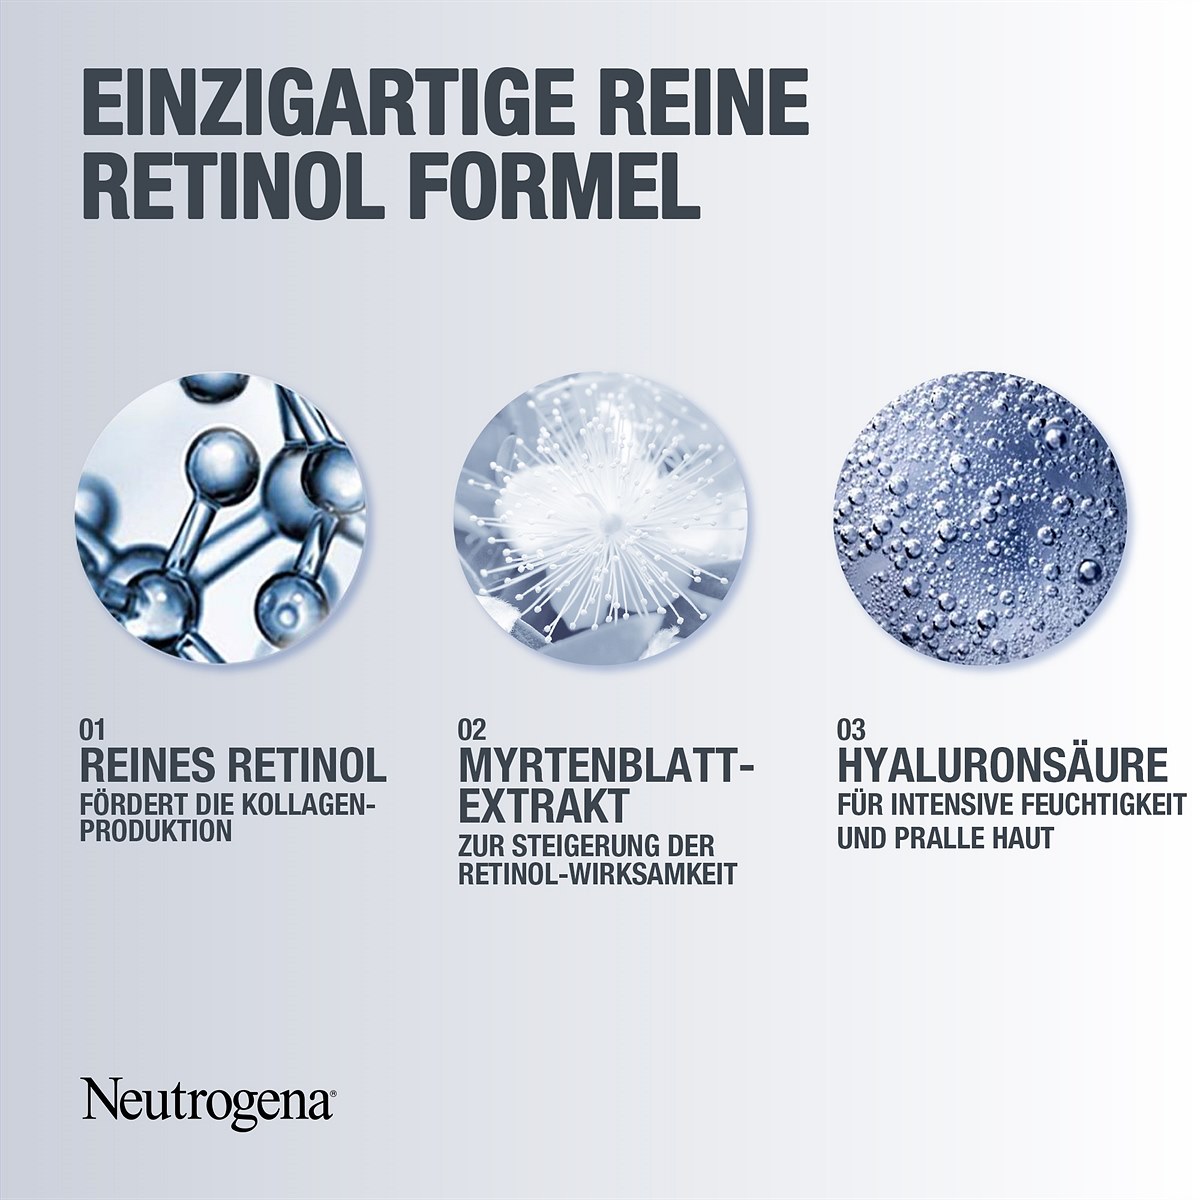 Neutrogena Retinol Boost Gesichtspflegelinie Image 3